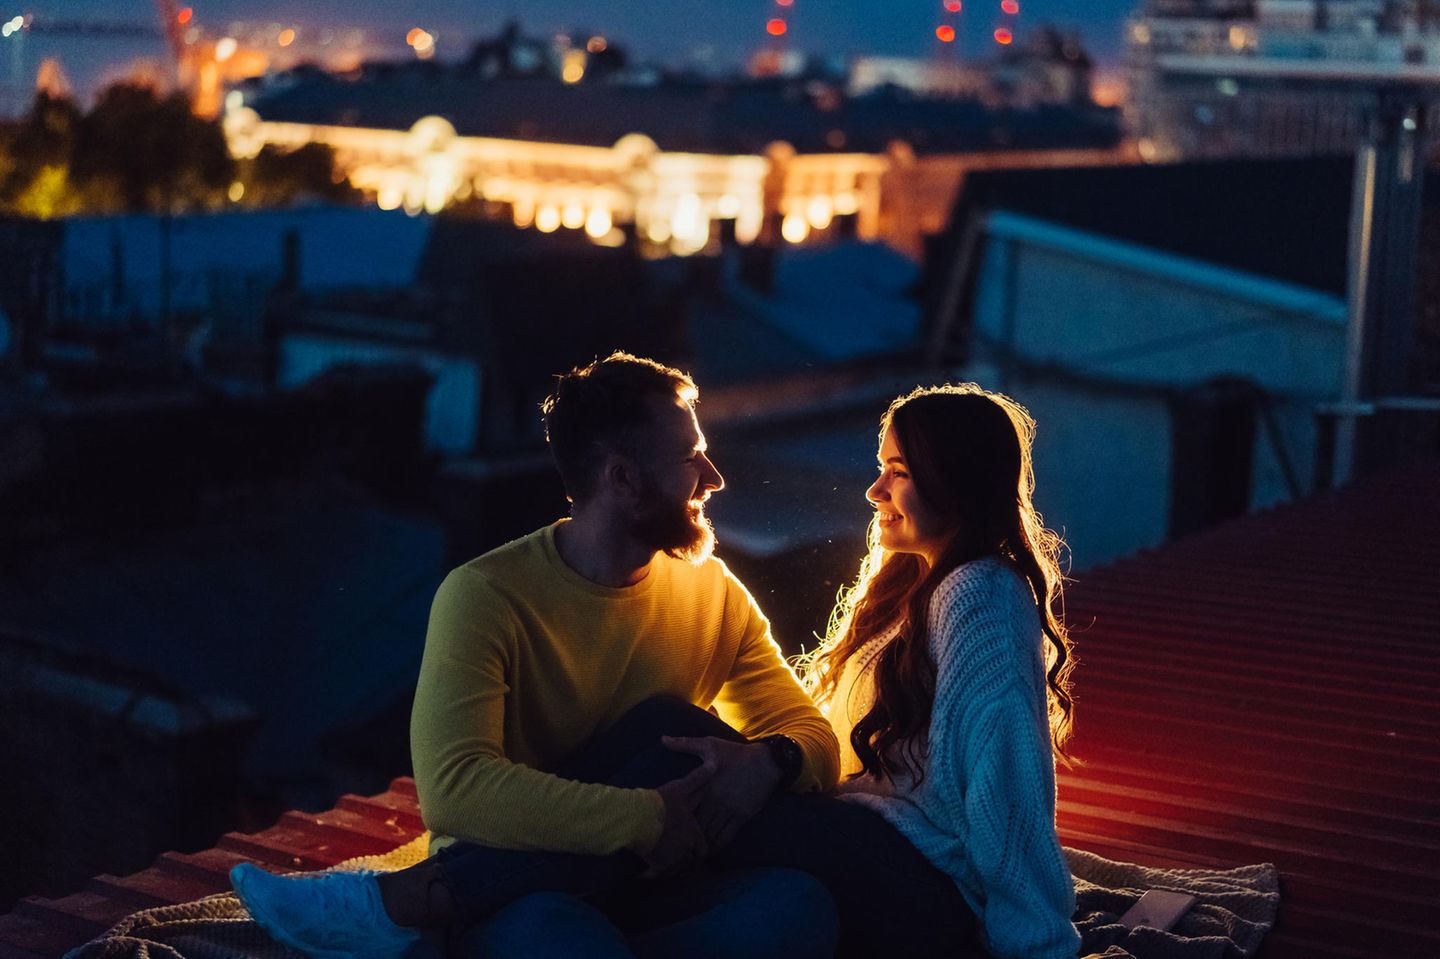 Beziehung auffrischen: Ein Pärchen bei einem romantischen Date